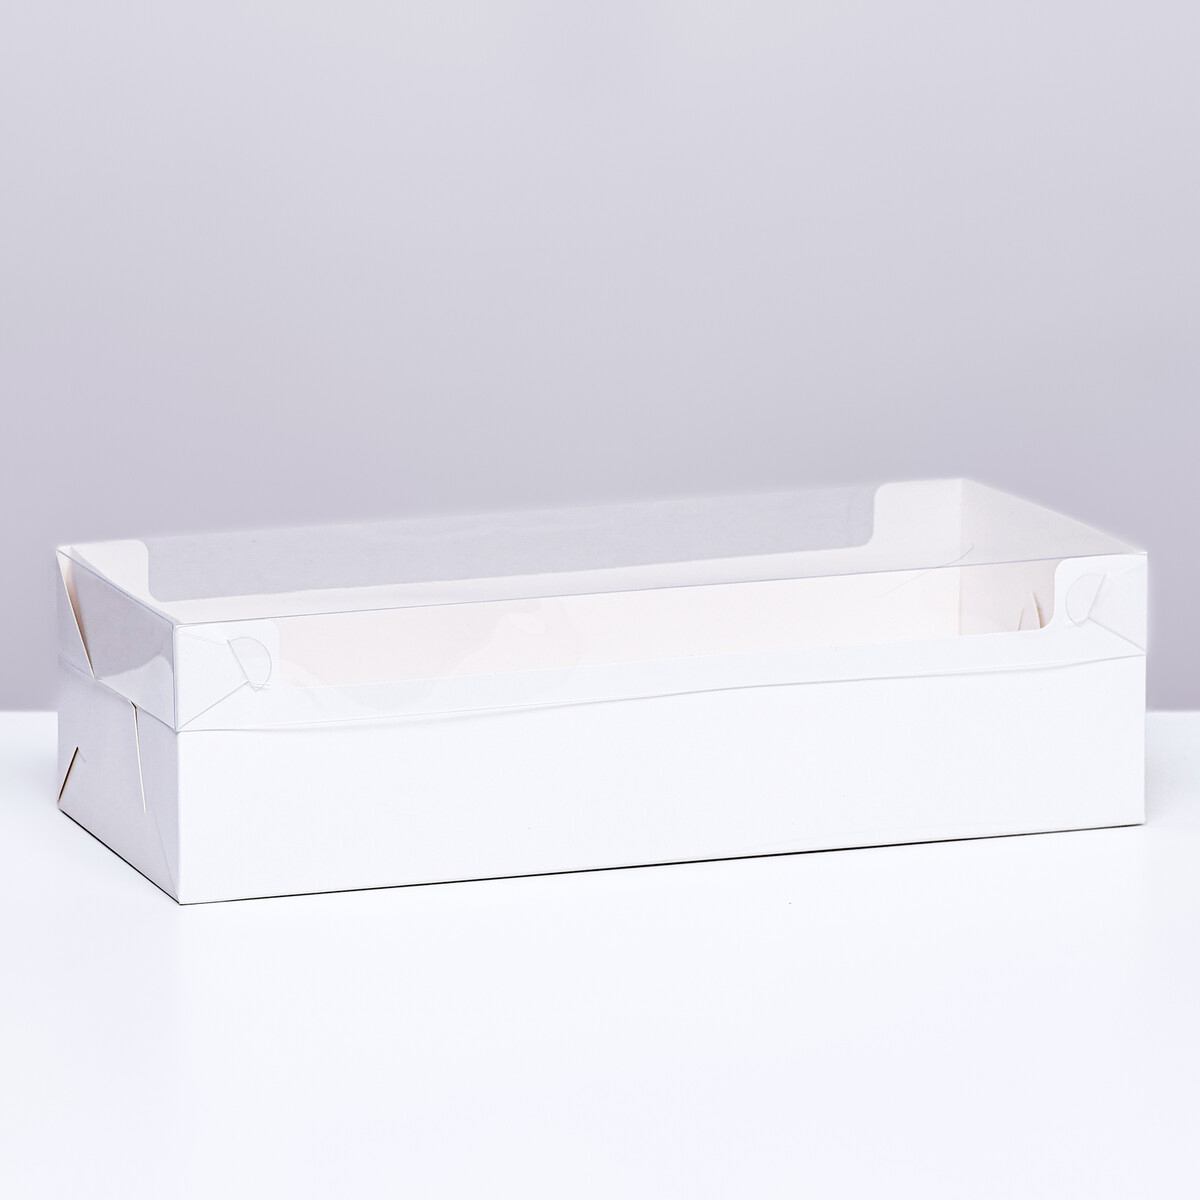 Коробка под рулет белая, 30 х 11 х 8 см коробка под рулет белая 18 5 х 6 5 х 6 5 см